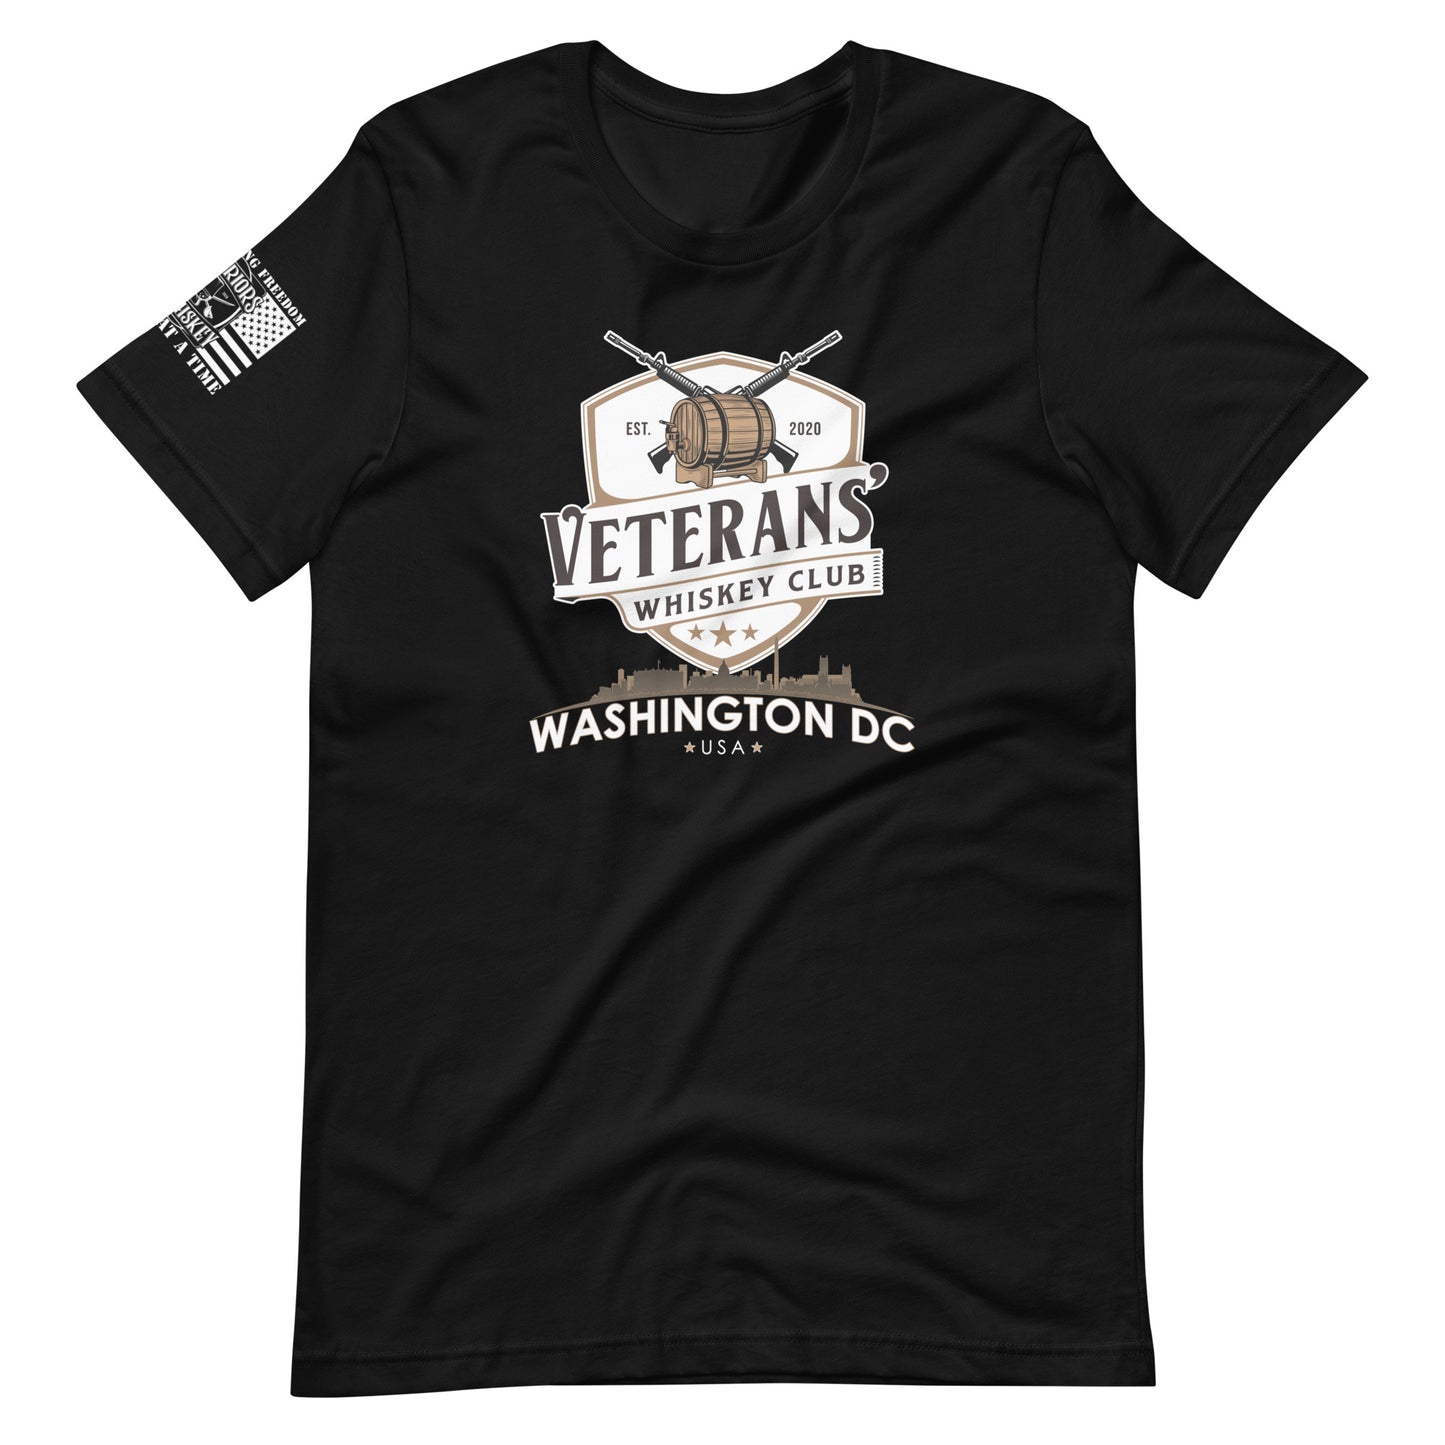 VWC Washington DC Short-Sleeve Unisex T-shirt